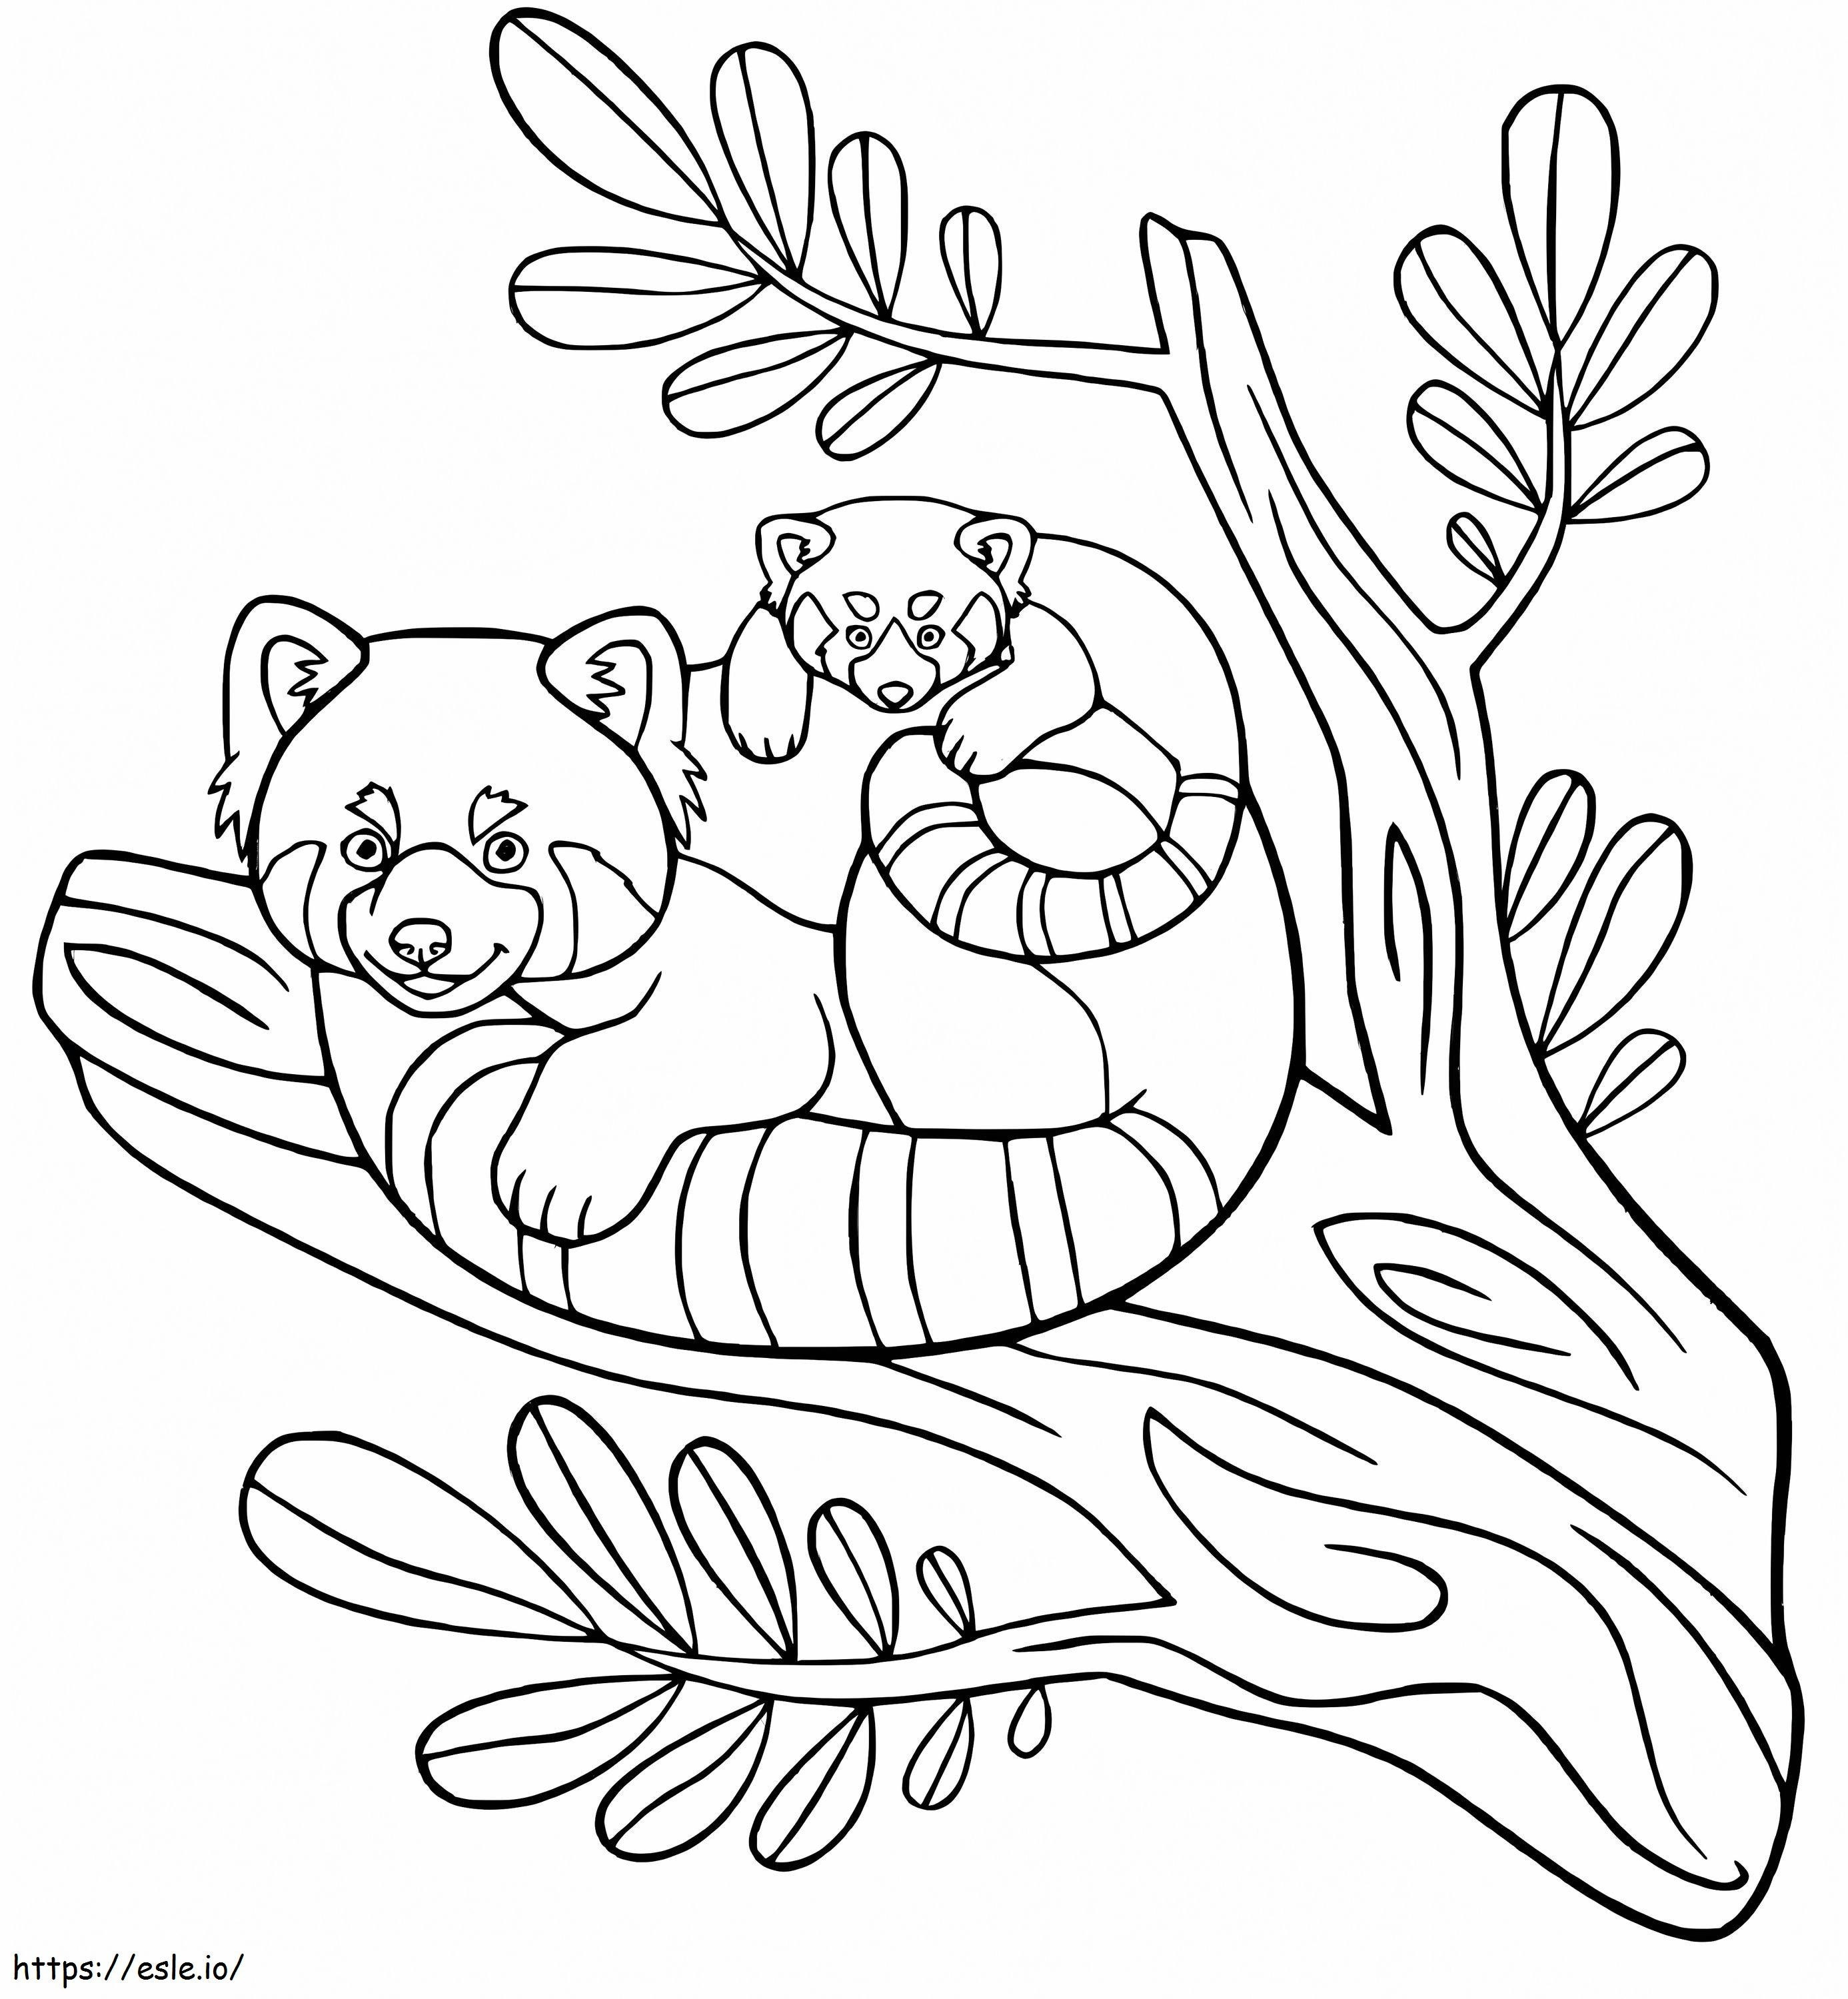 Coloriage Mère et bébé panda sur une branche d'arbre à imprimer dessin